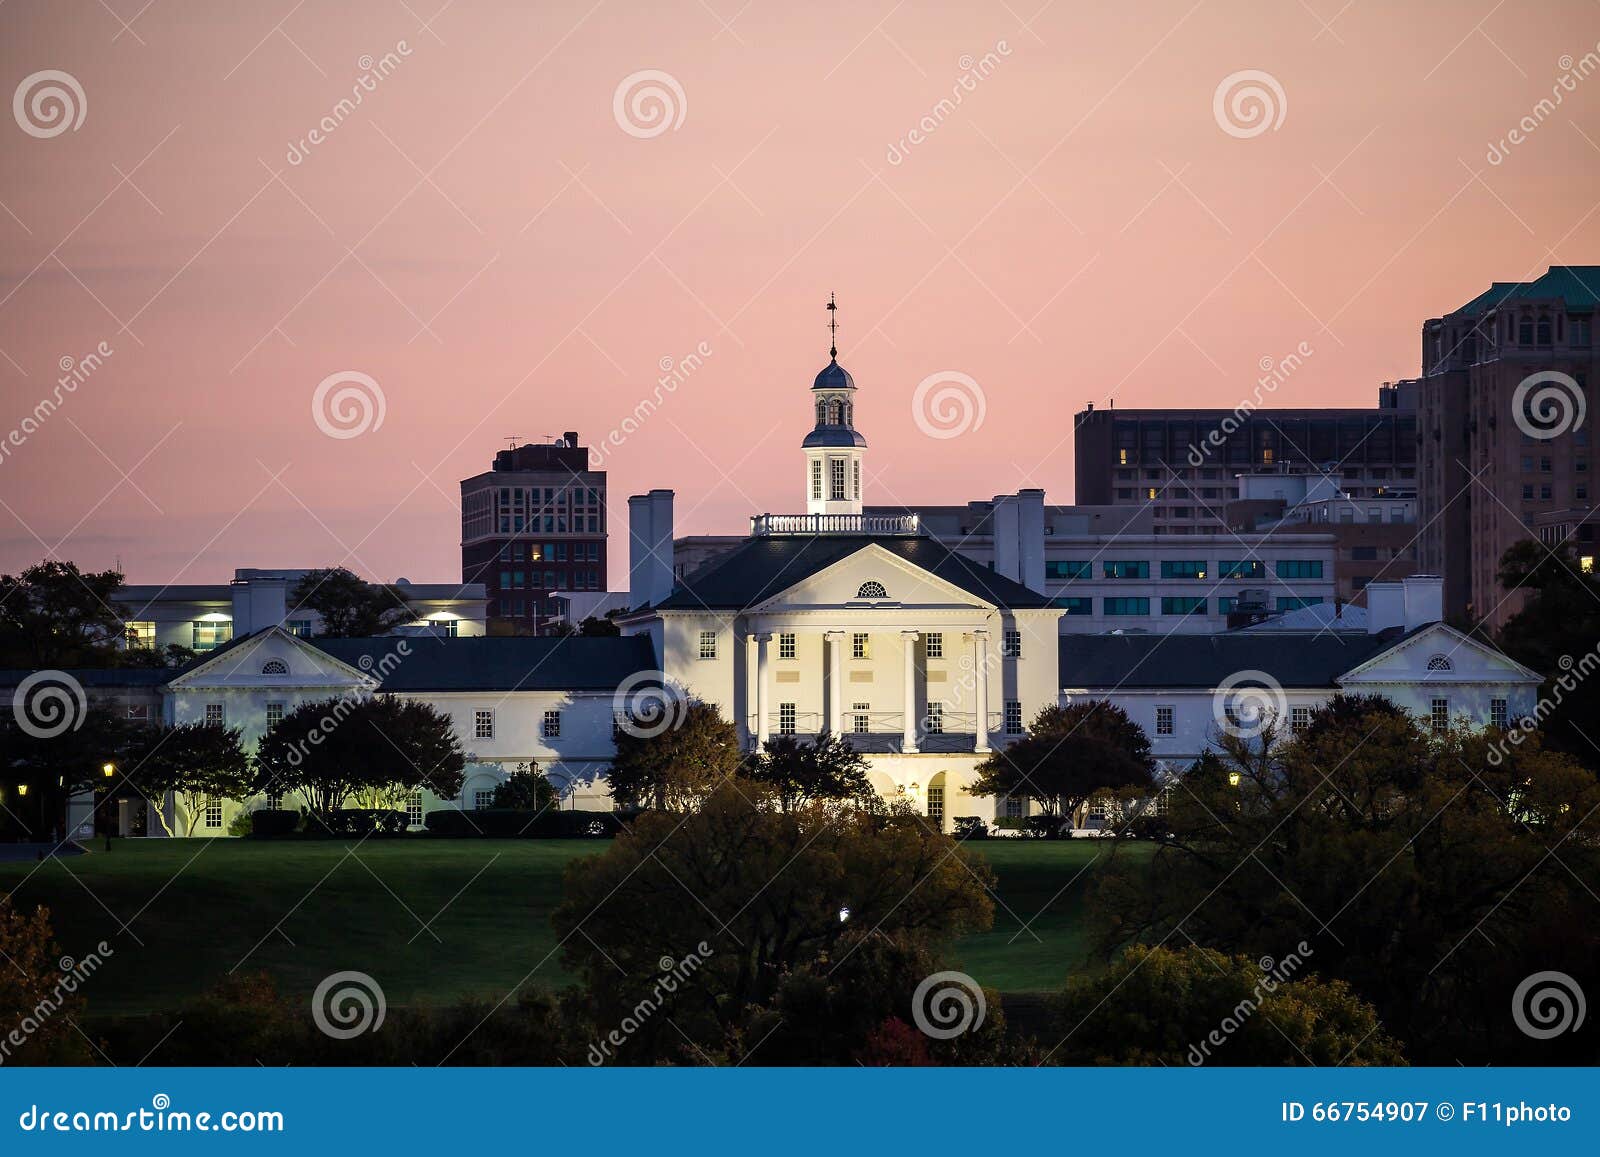 Government building in Richmond VA, USA